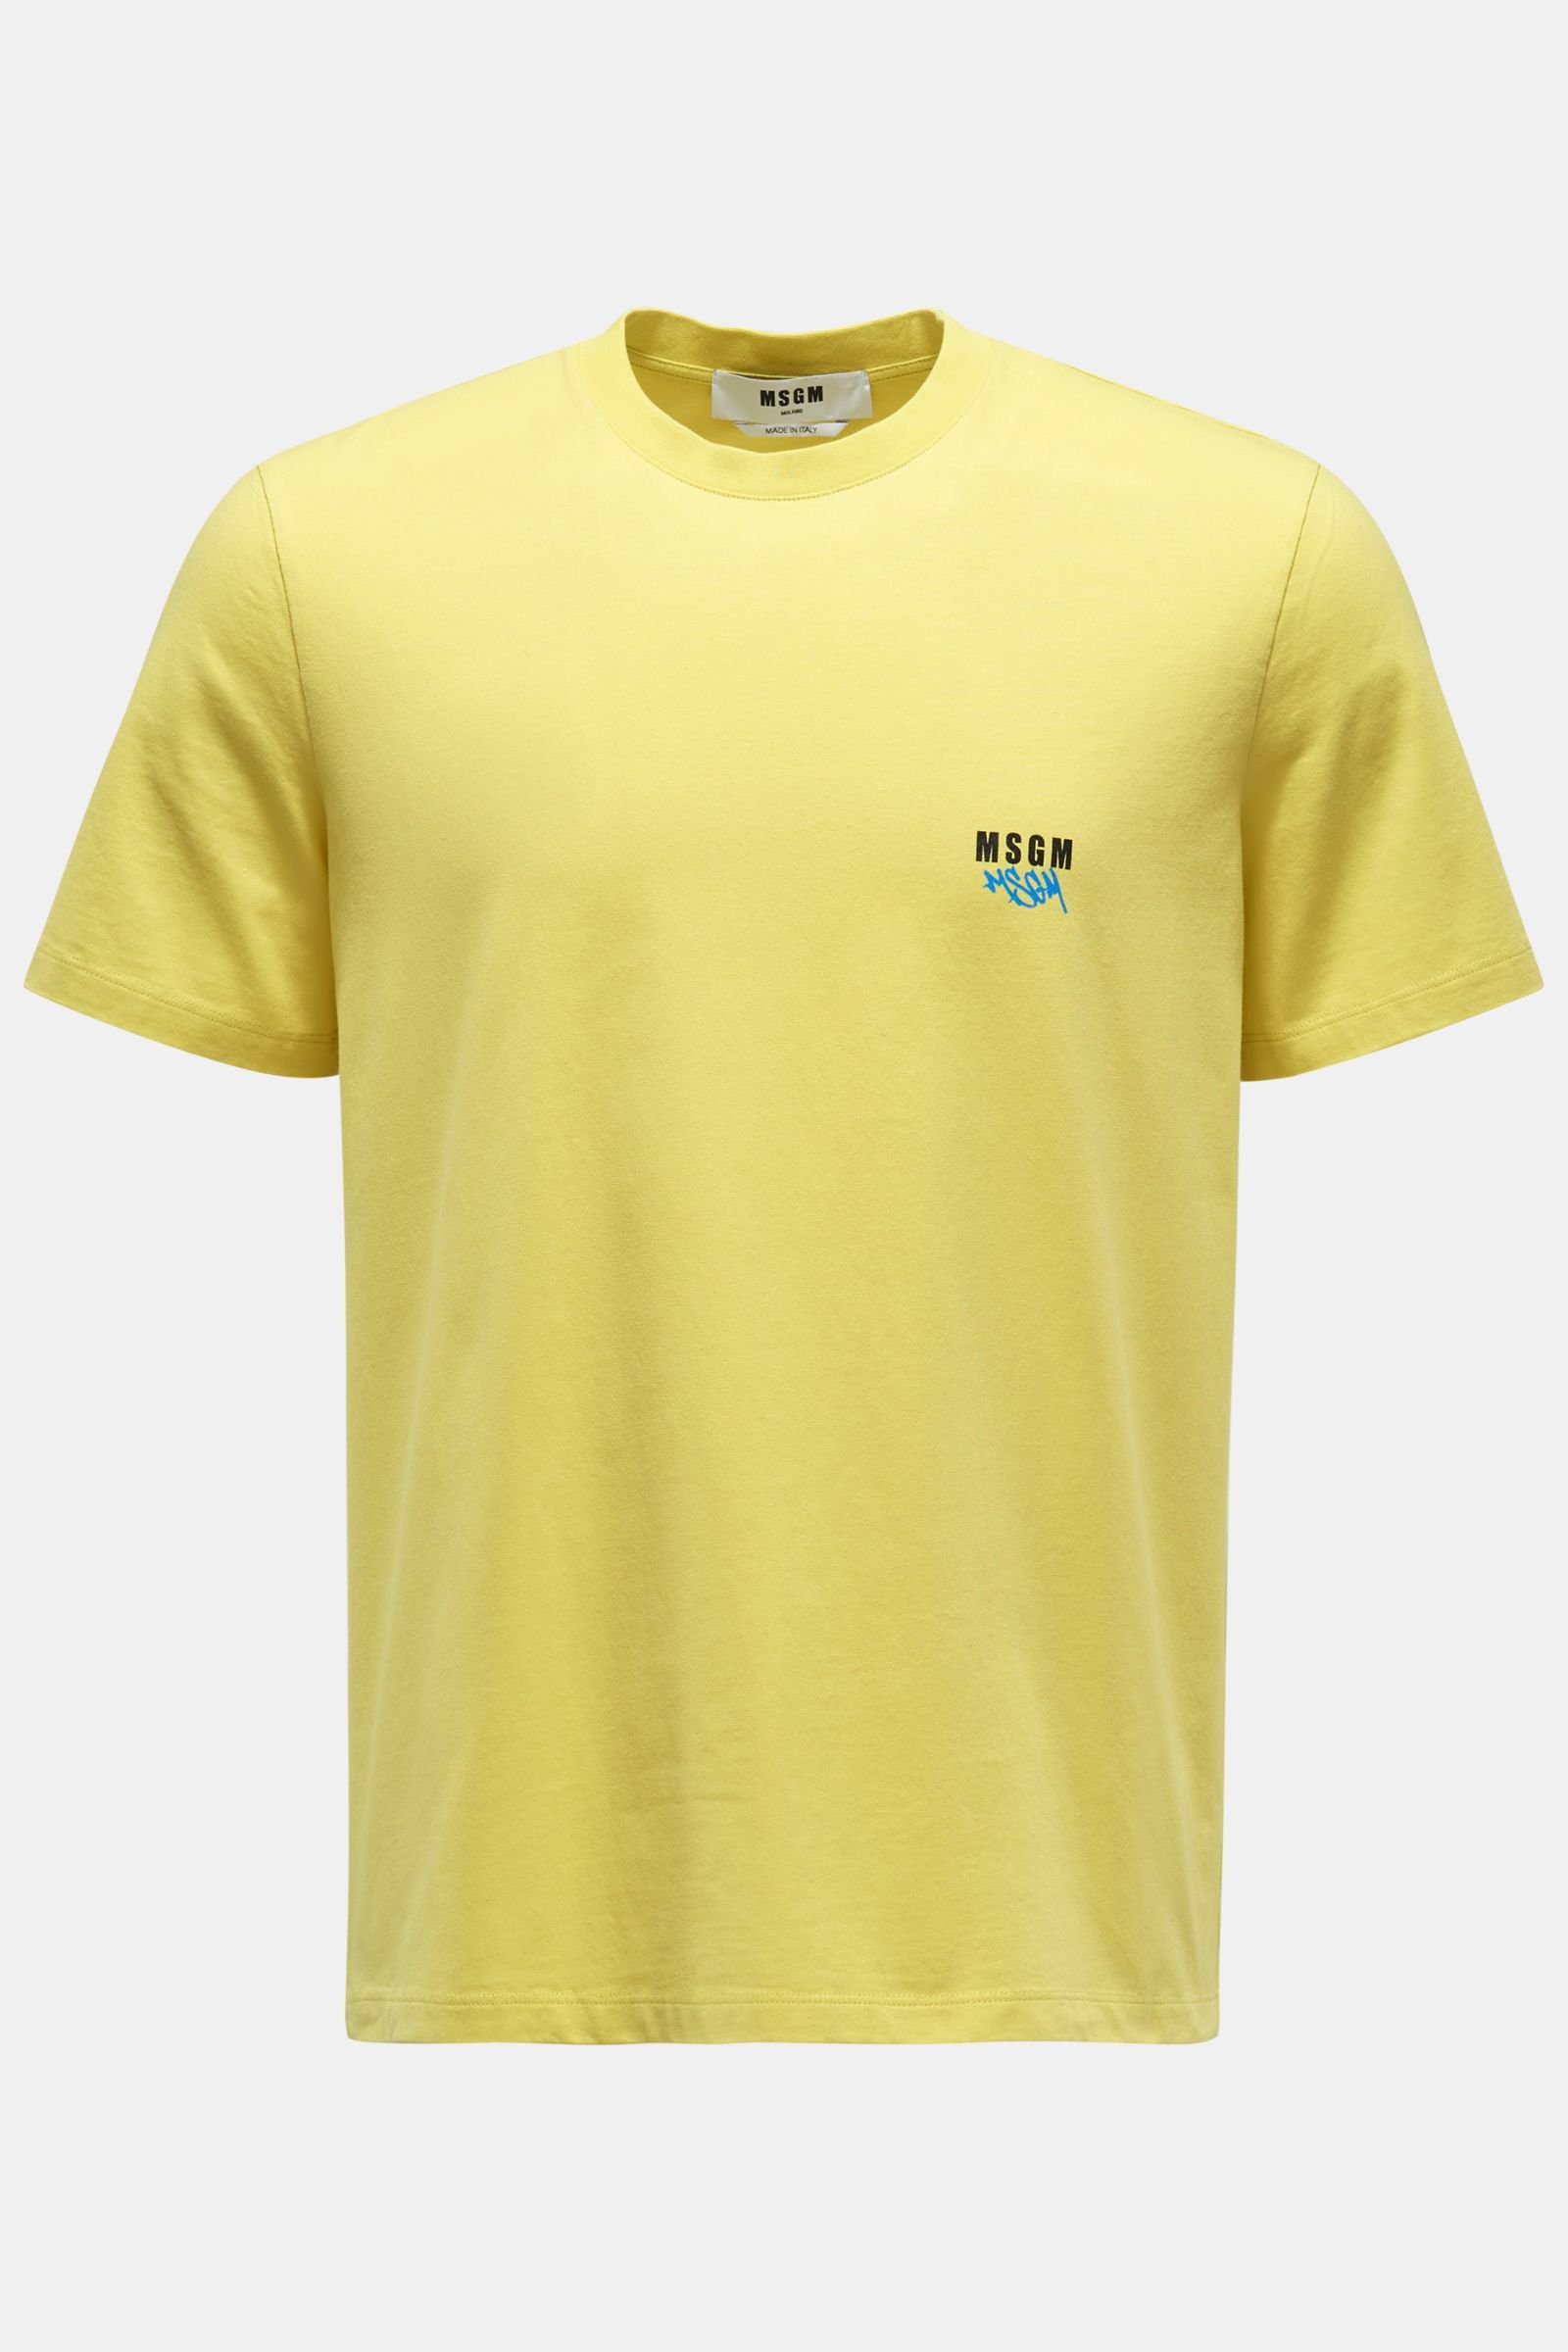 Rundhals-T-Shirt gelb